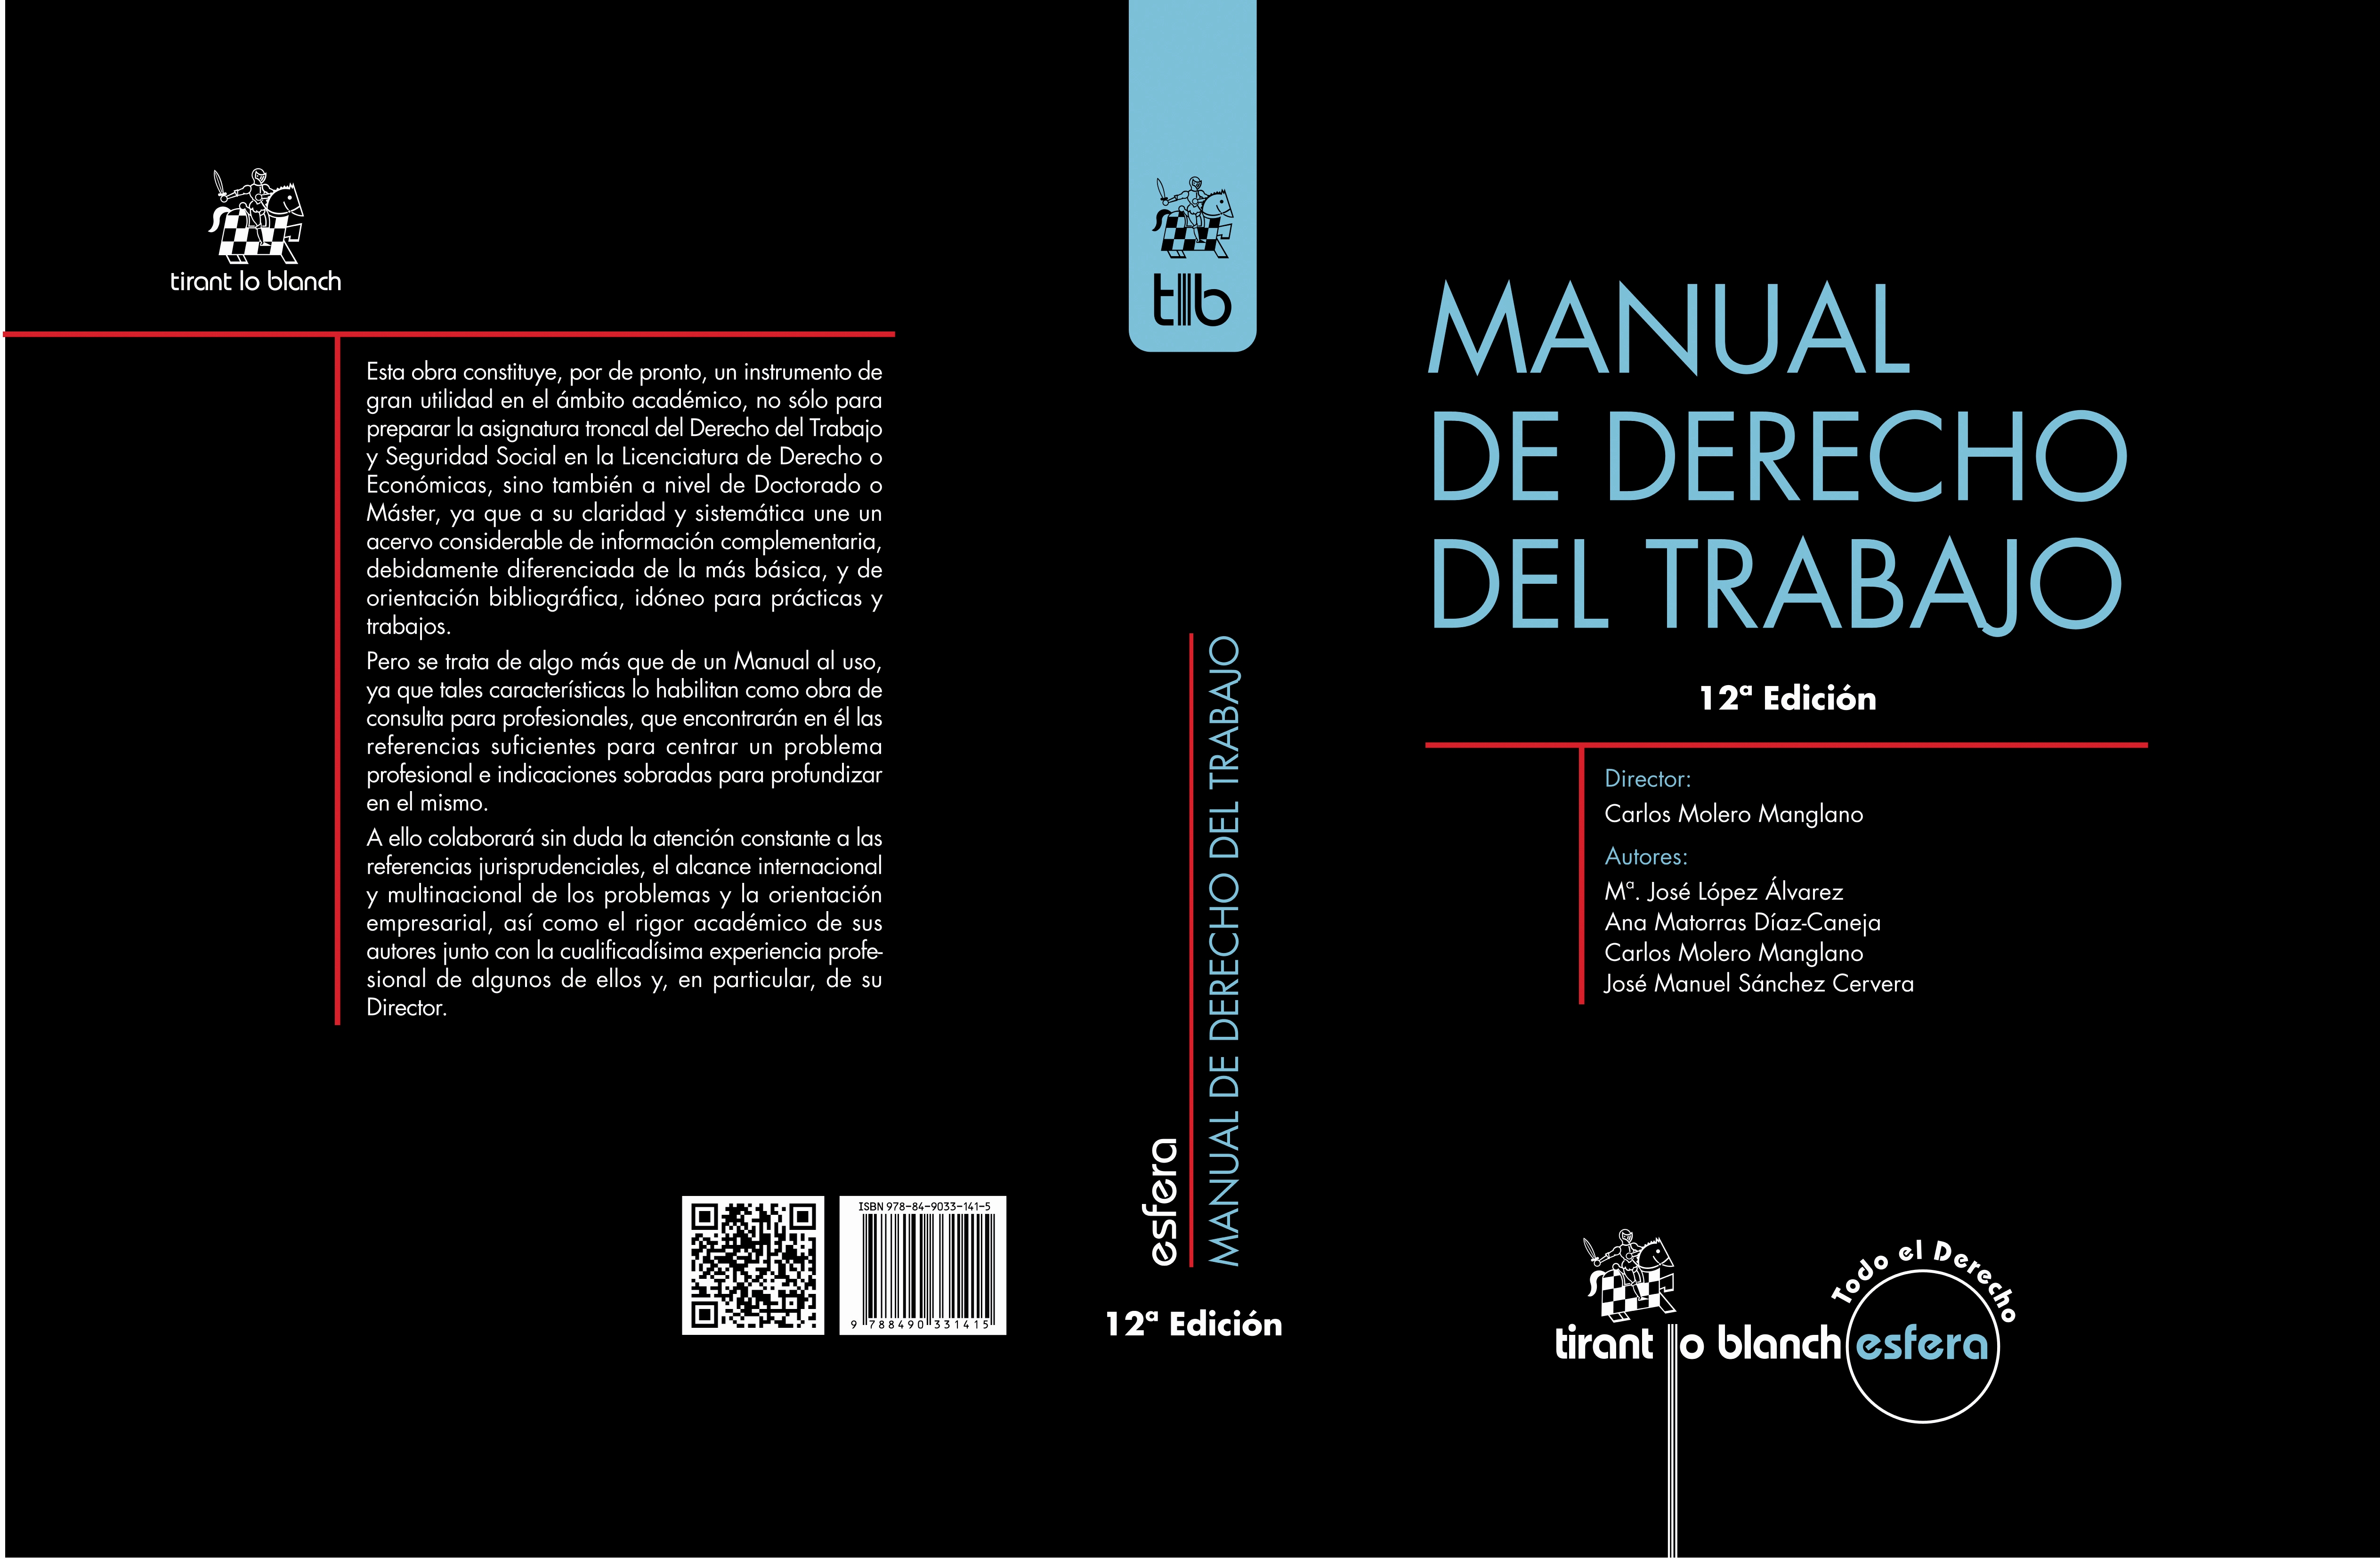 MANUAL DE DERECHO DEL TRABAJO - 12ª EDICION